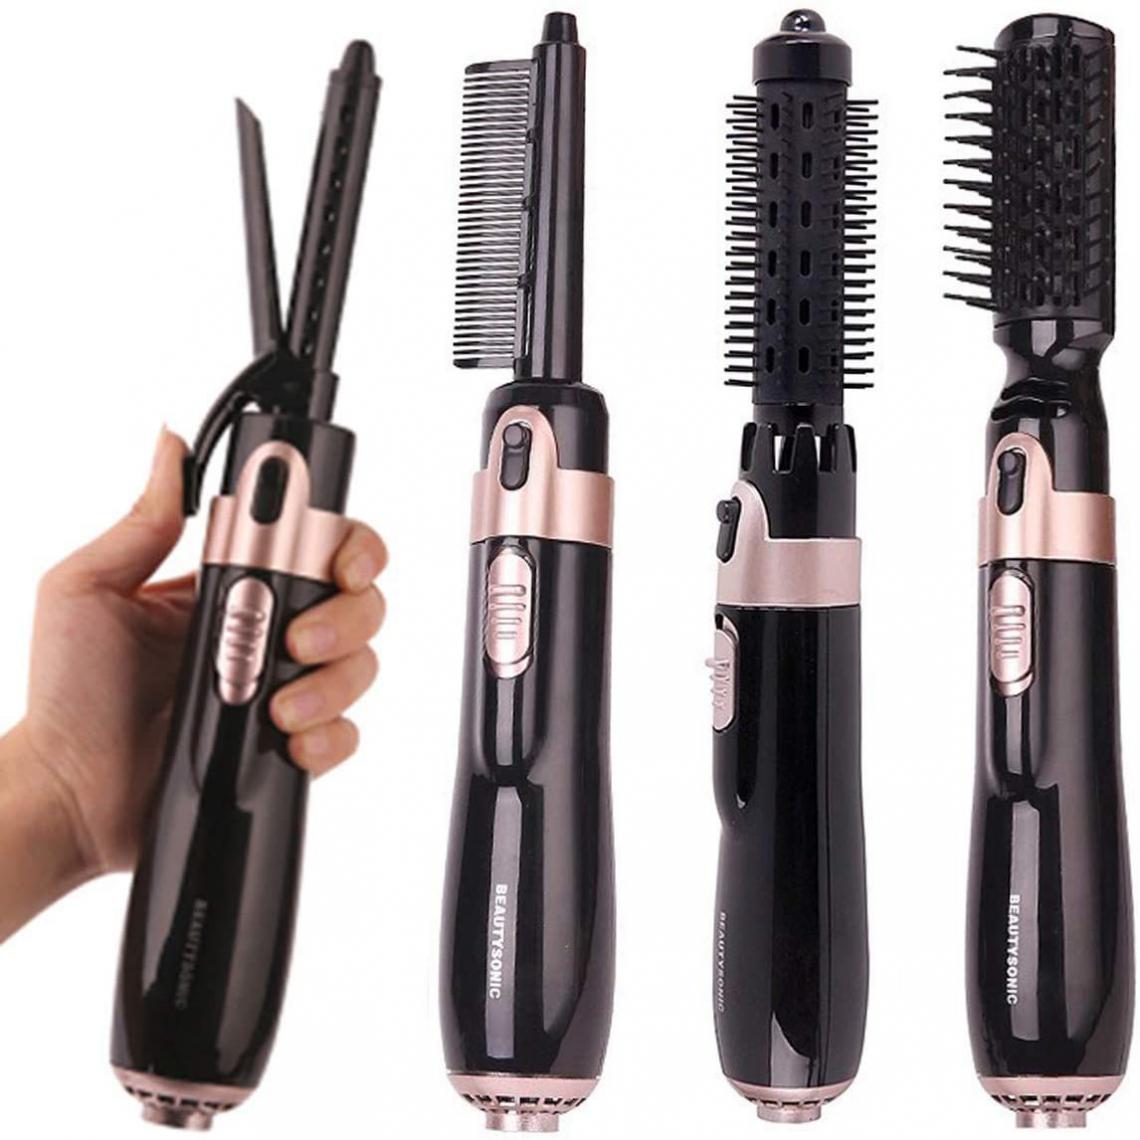 Chrono - Brosse soufflante rotative, brosse à air chaud 5 en 1, pour boucler, lisser et coiffer les cheveux(Noir) - Lisseur